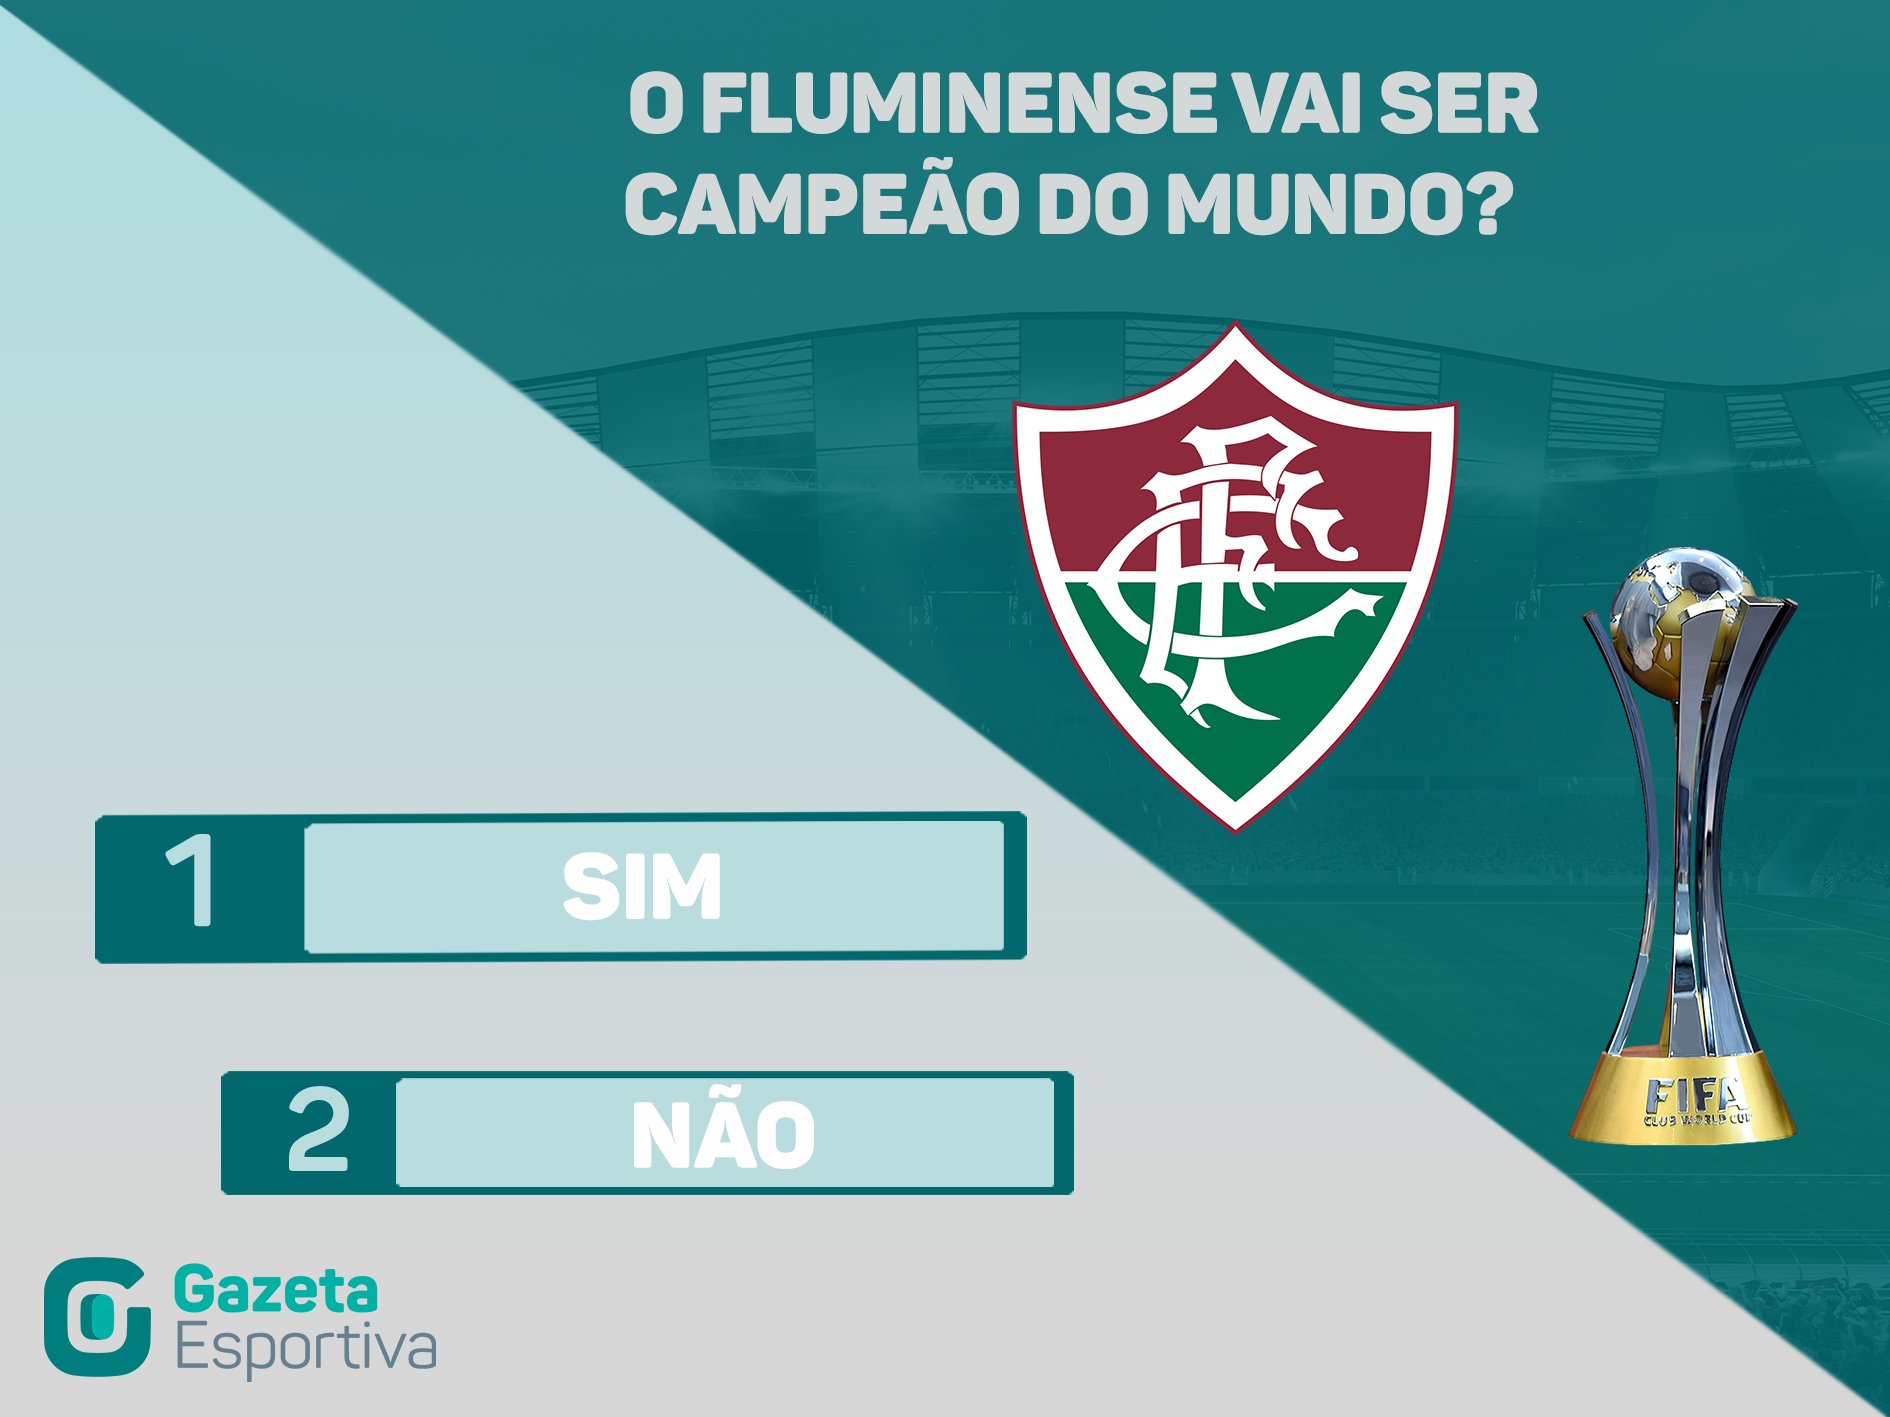 Gazeta Esportiva - Quem é o melhor time do Brasil atualmente? 🇧🇷⚽ Vote  também no site gazetaesportiva.com!